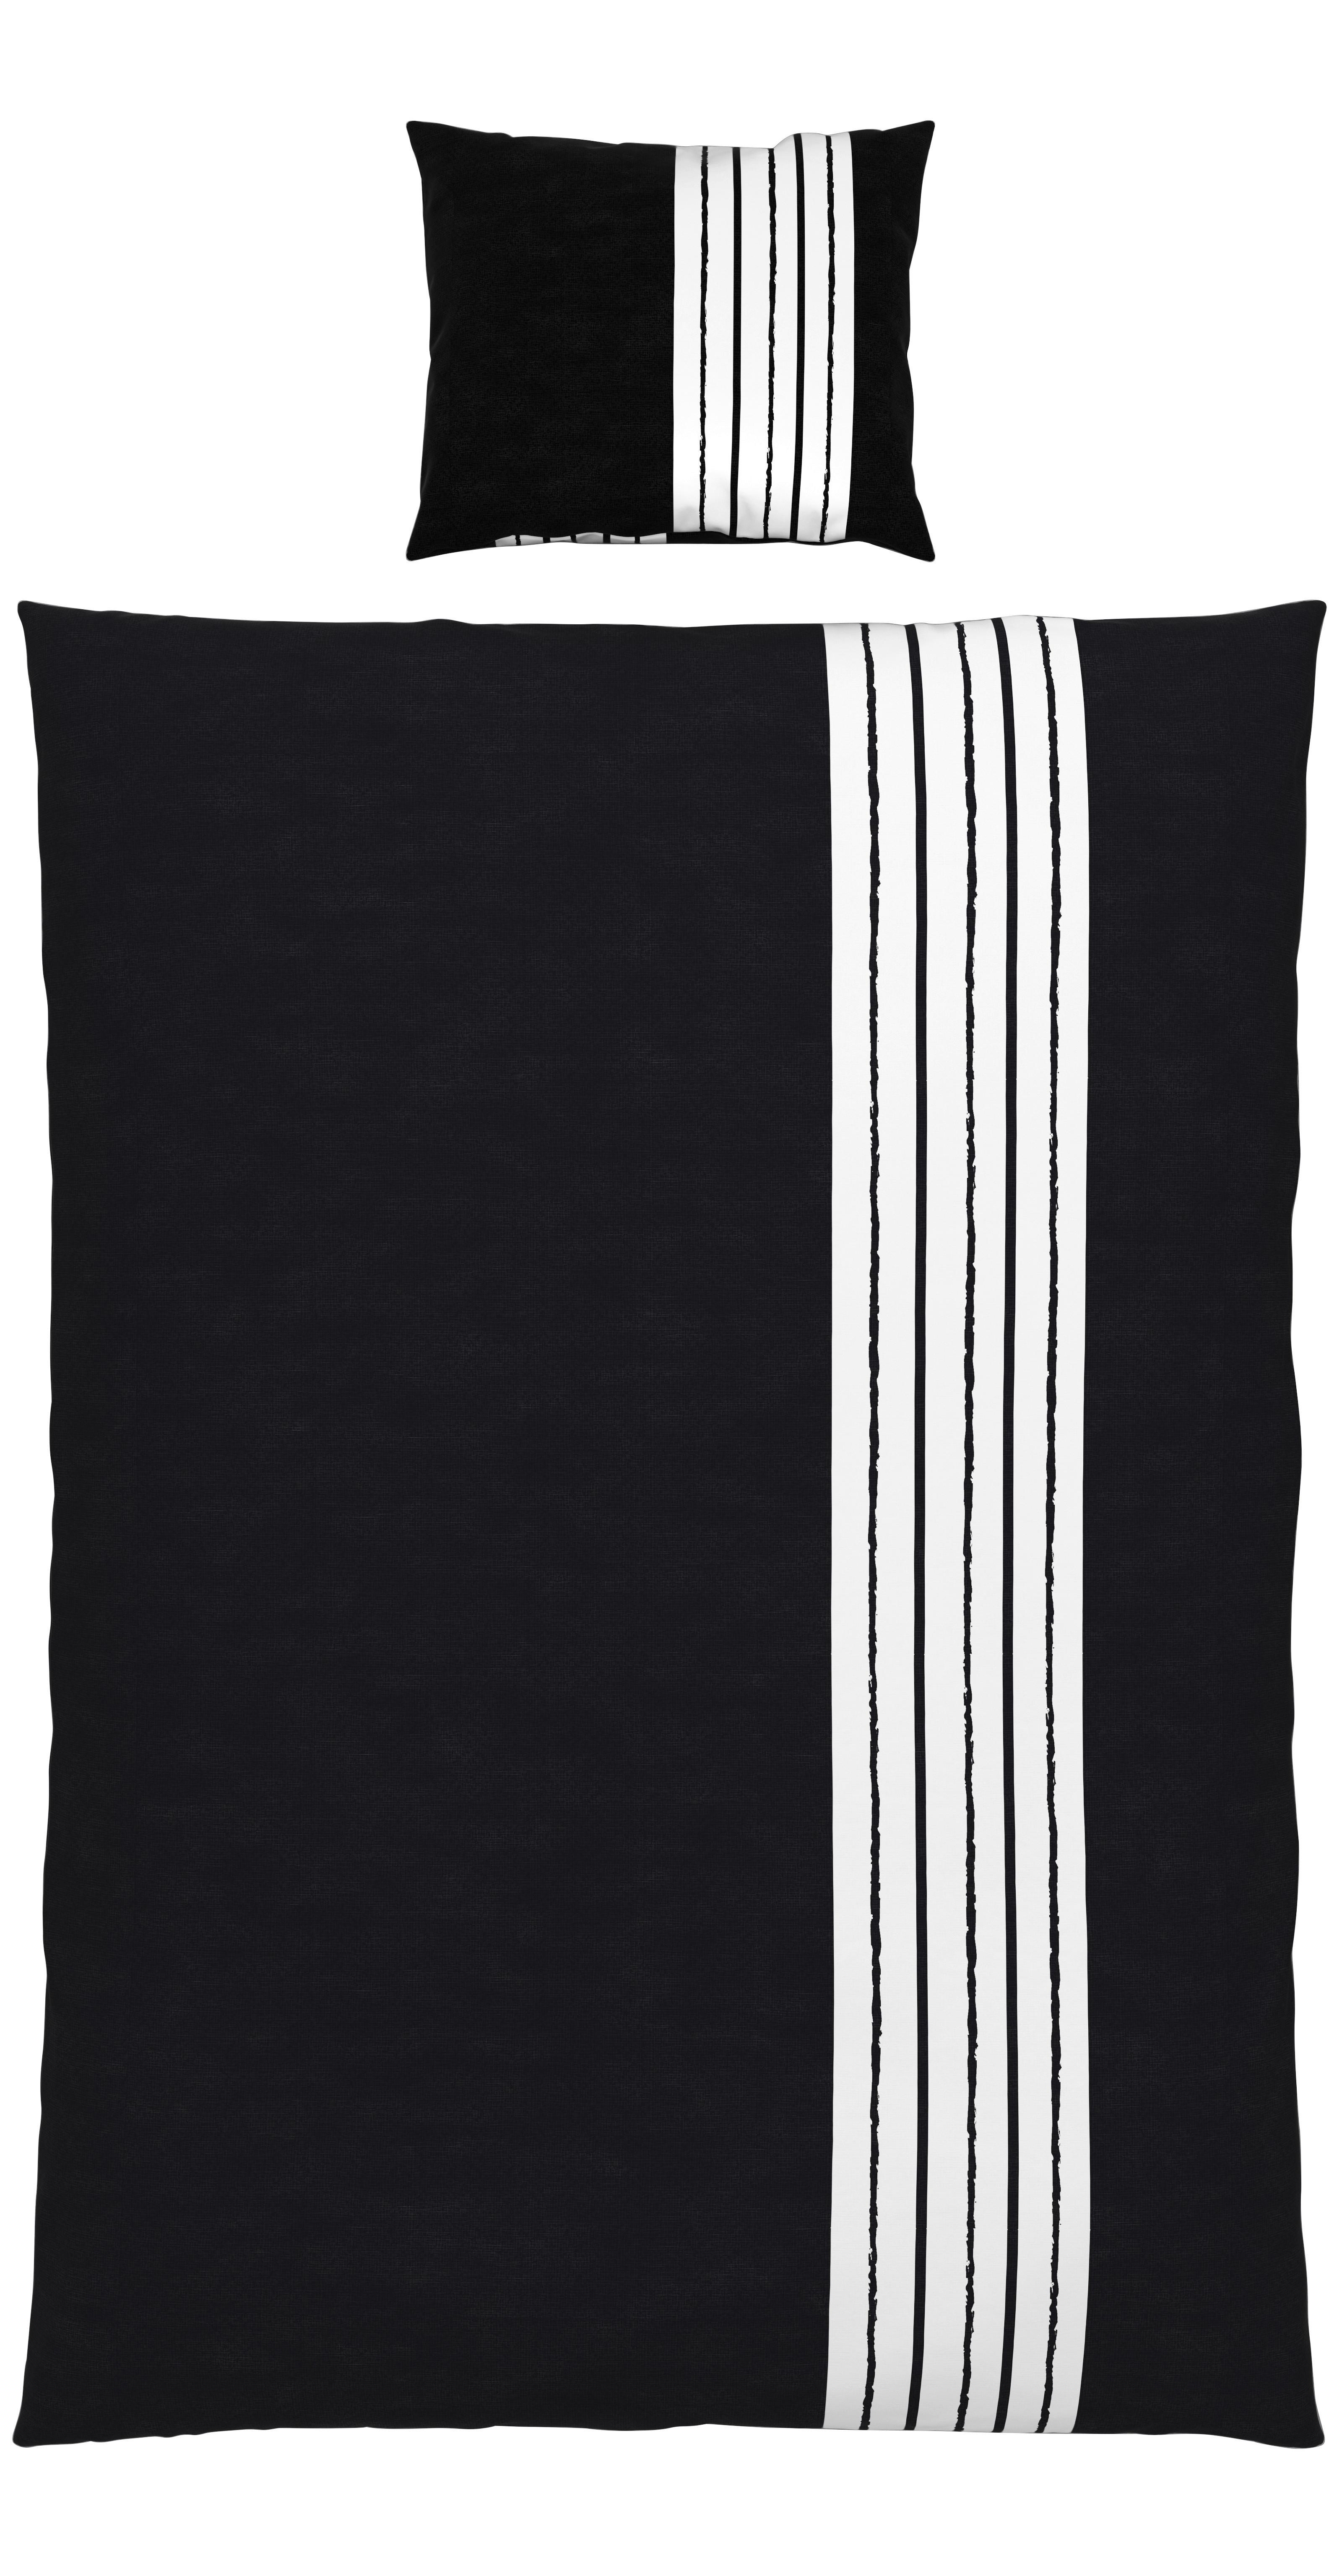 Bettwäsche Stripes in Schwarz/Weiss ca. 160x210cm - Schwarz, Modern, Textil (160/210cm) - Modern Living